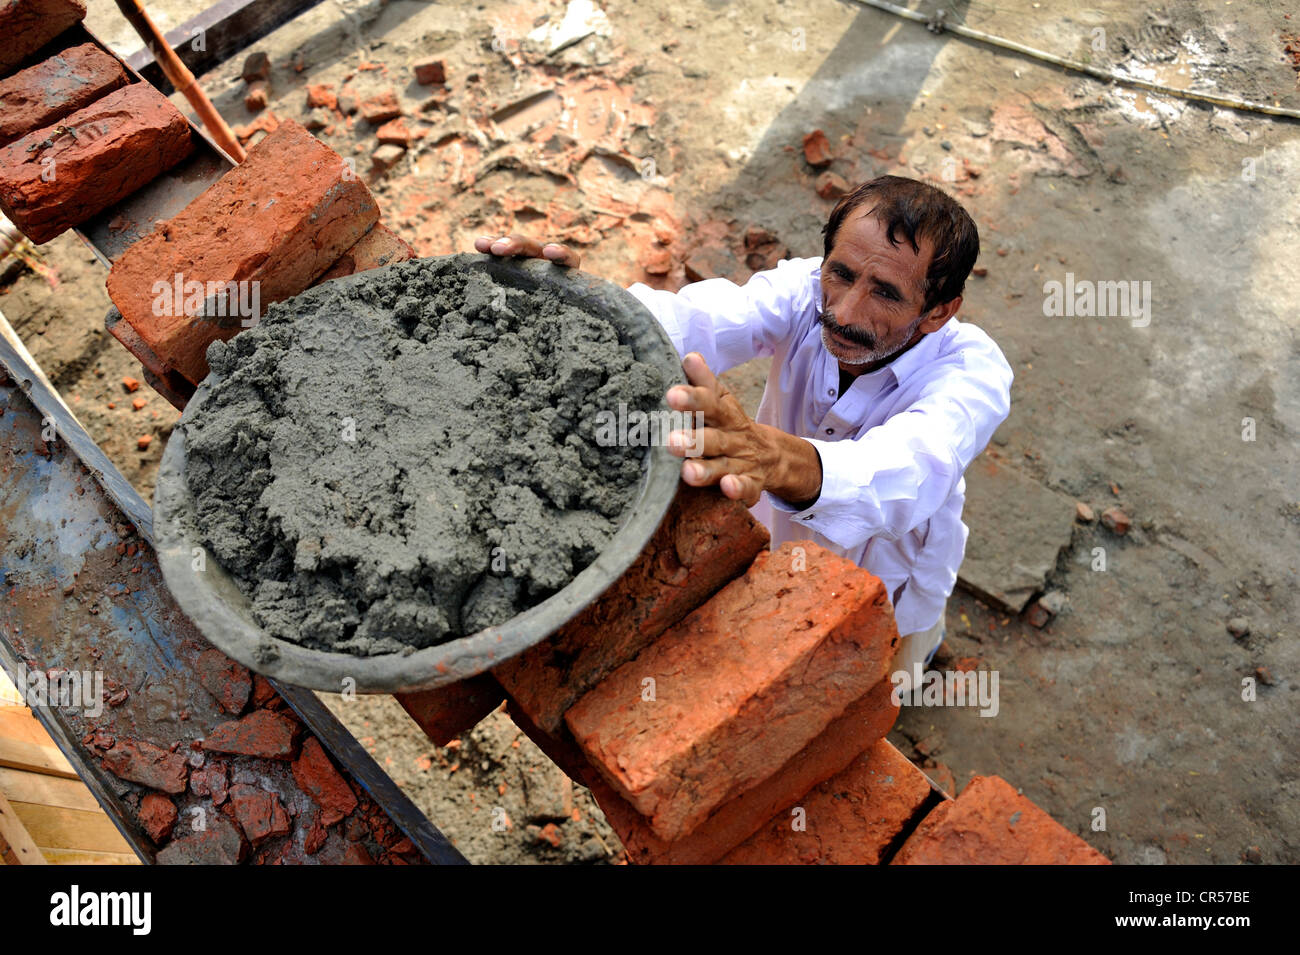 L'uomo della coppa di sollevamento con cemento su una impalcatura, la costruzione di case di mattoni per le famiglie le cui case sono state distrutte durante la Foto Stock